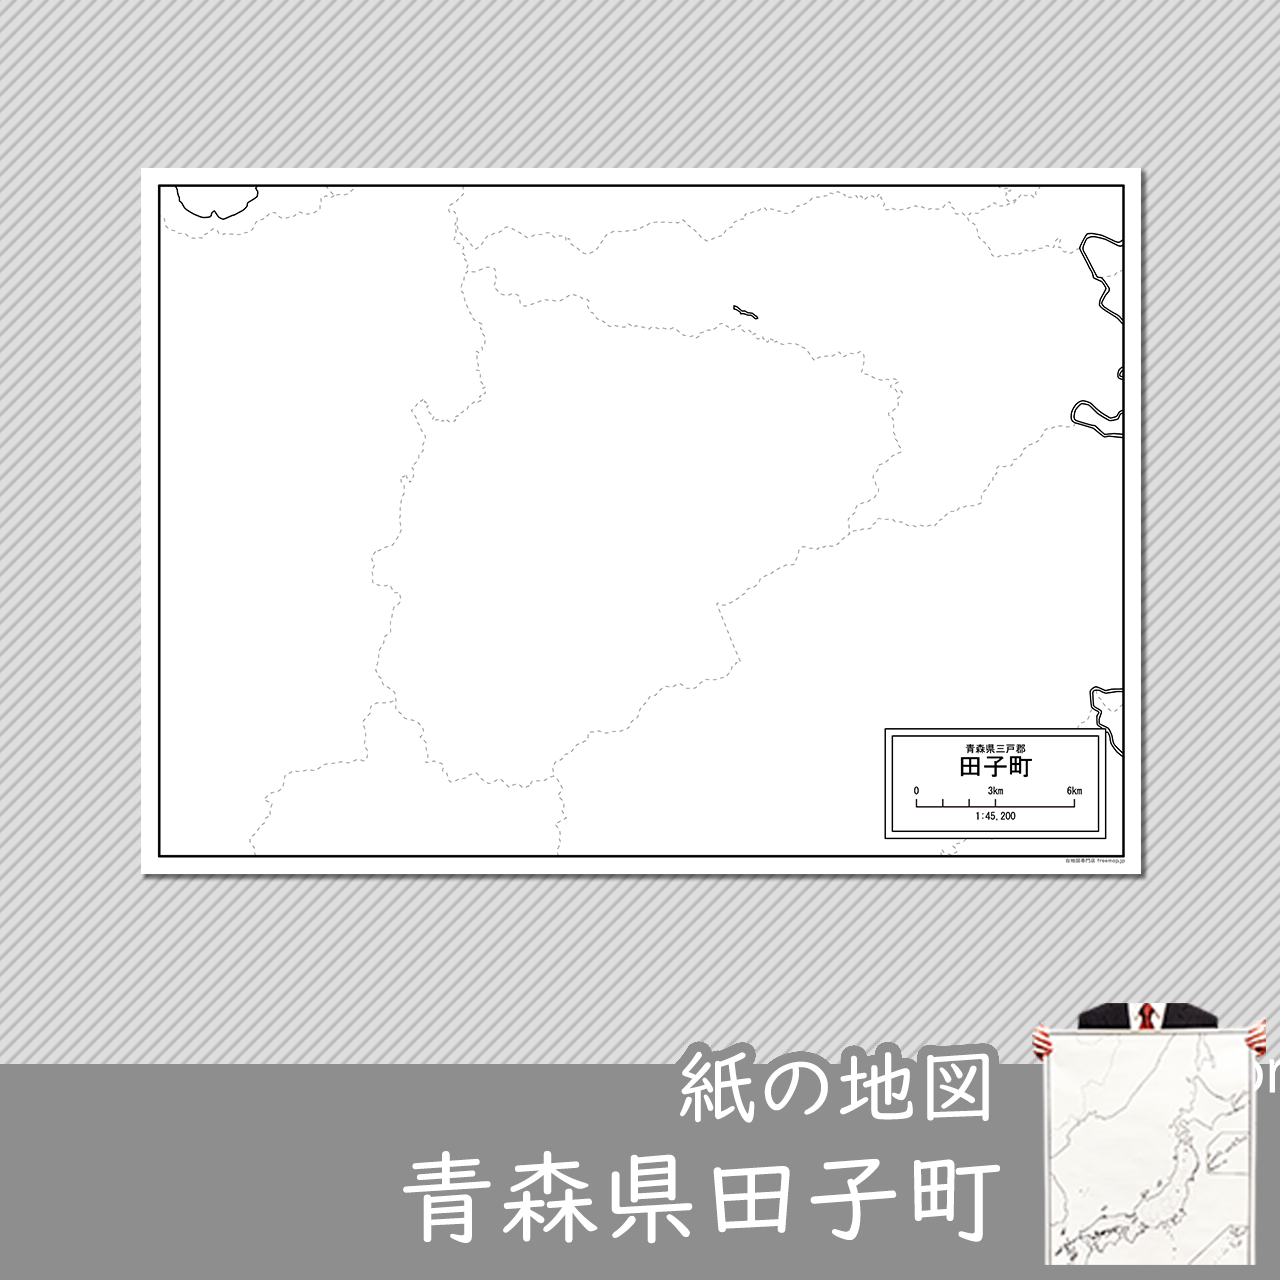 田子町の紙の白地図のサムネイル